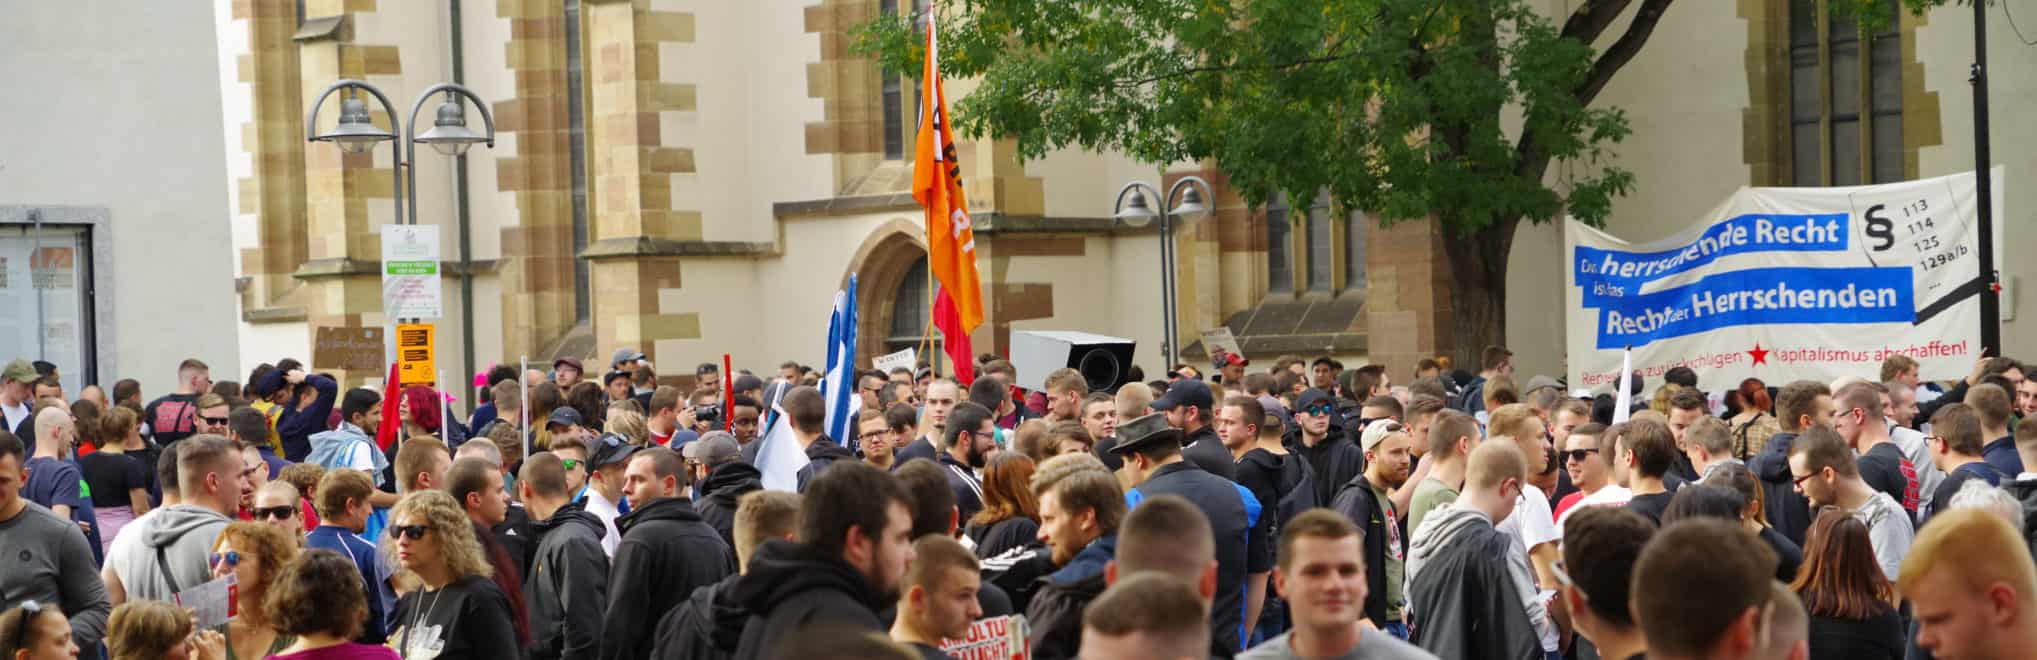 Demonstration gegen das baden-württembergische Polizeigesetz erfolgreich